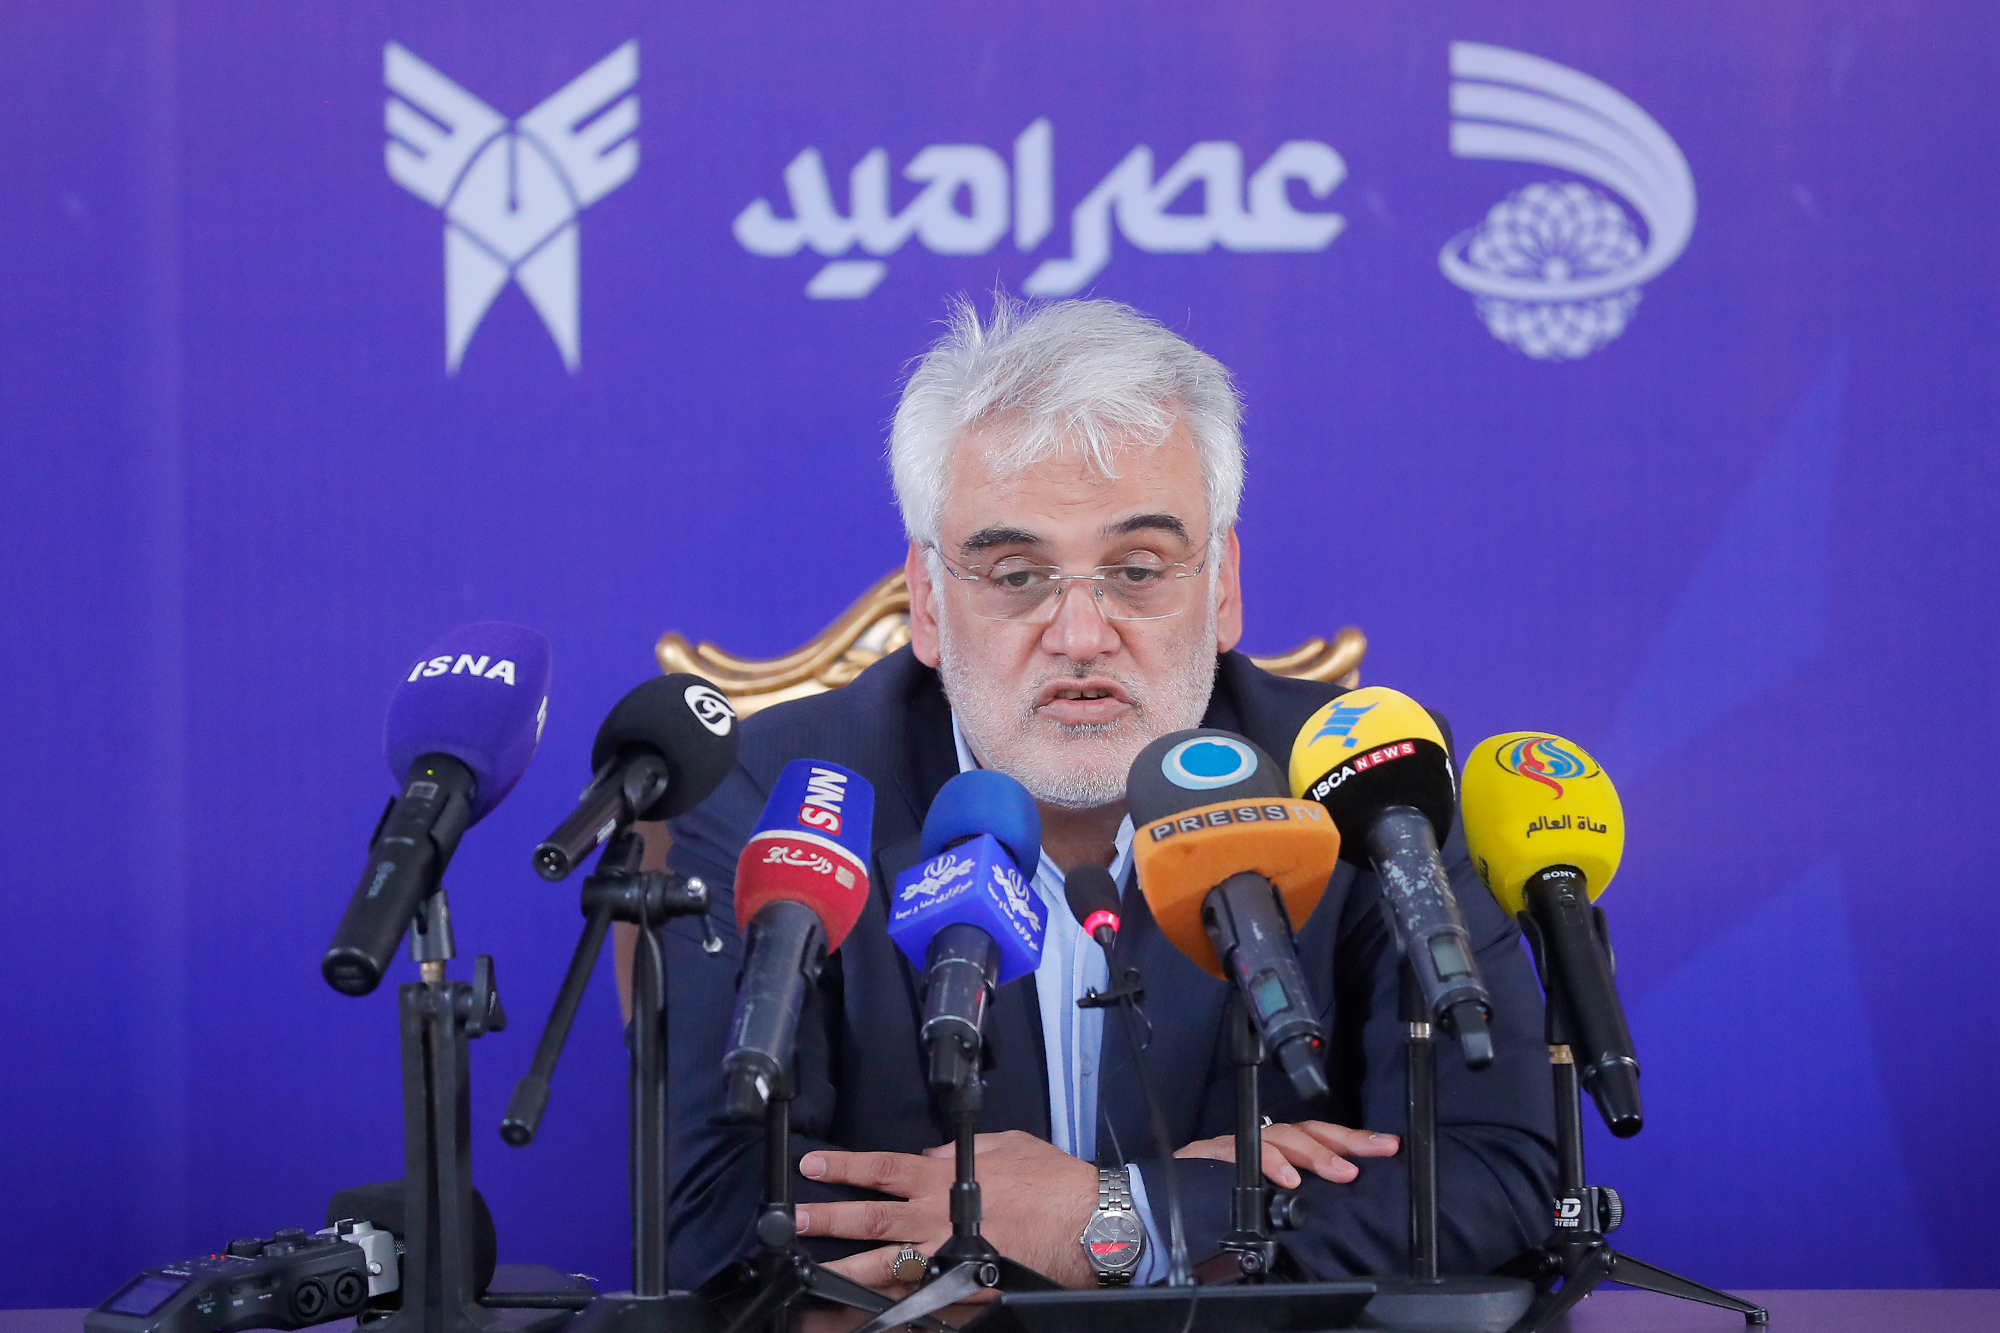 محمدمهدی طهرانچی رئیس دانشگاه آزاد اسلامی در نشست خبری رویداد ملی عصر امید